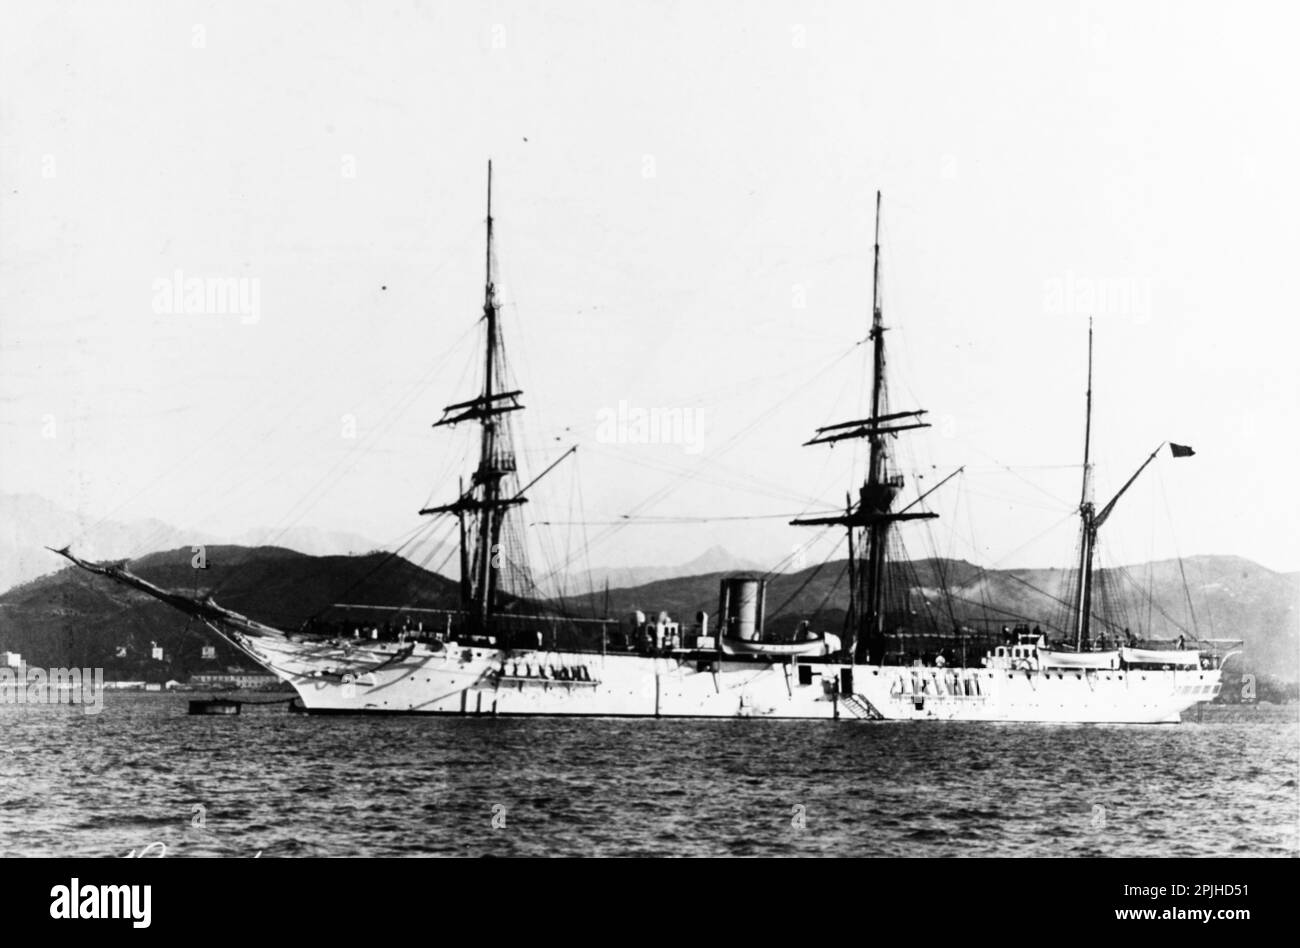 Amerigo Vespucci, eine Schraubenkorvette der italienischen Regia Marina (Royal Navy), die in den späten 1870er und frühen 1880er Jahren erbaut und 1898 fotografiert wurde Stockfoto